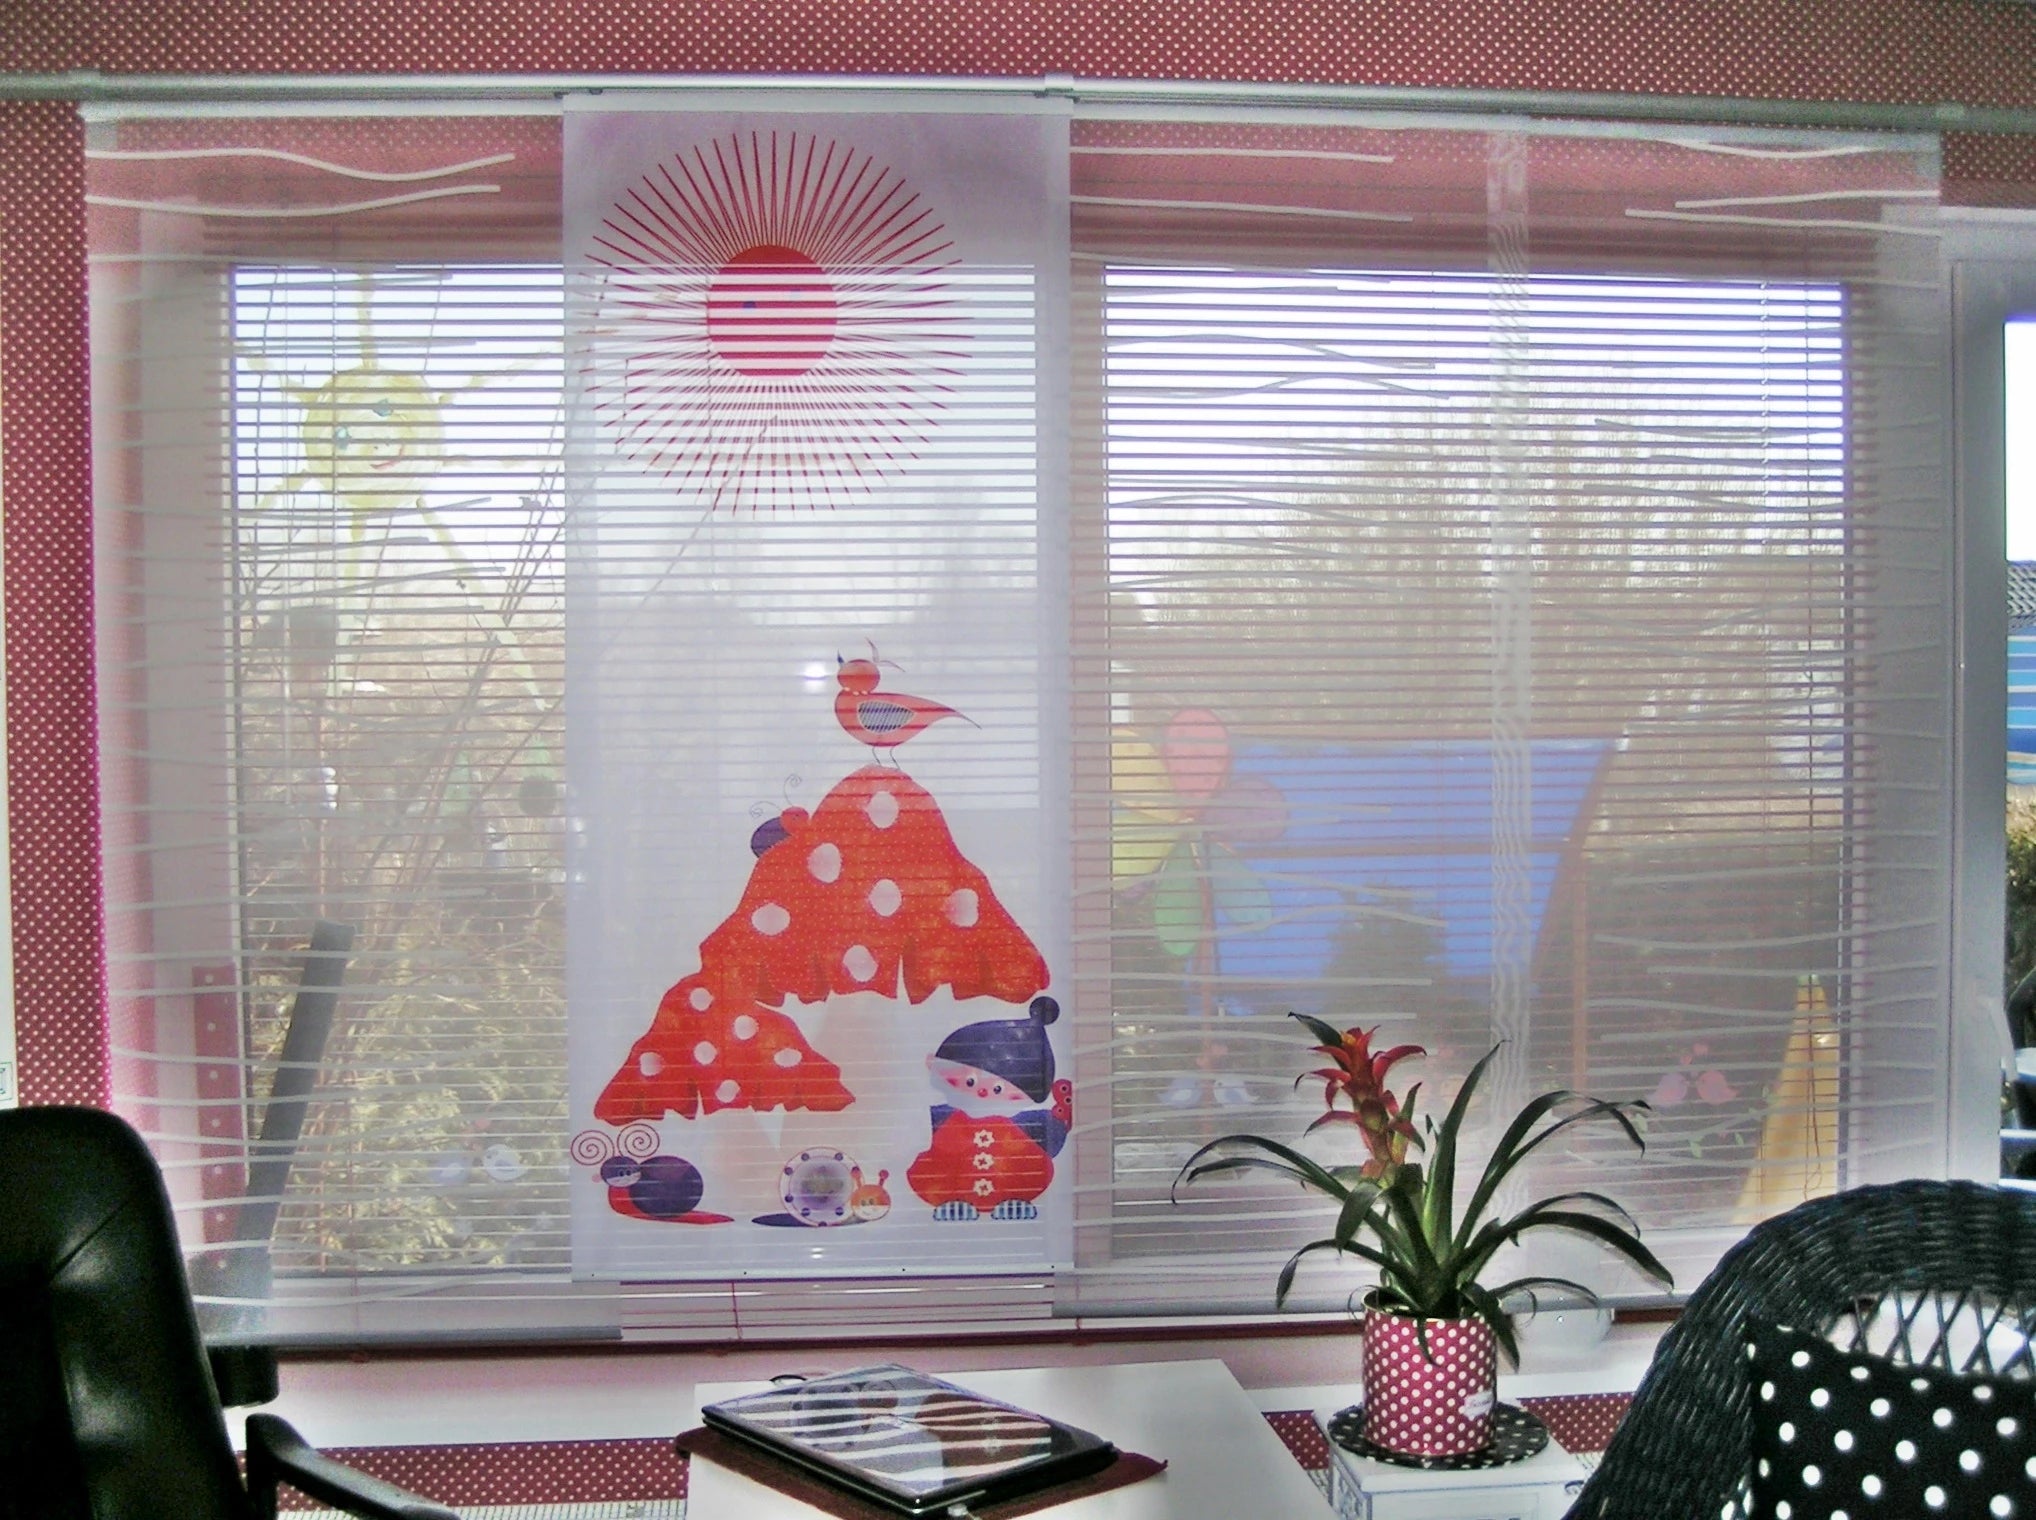 Bedruckte Paneele Schiebevorhang bedruckt mit kindlichem Weihnachtsmotiv am Fenster kombiniert mit transparenten Schiebevorhangpaneele